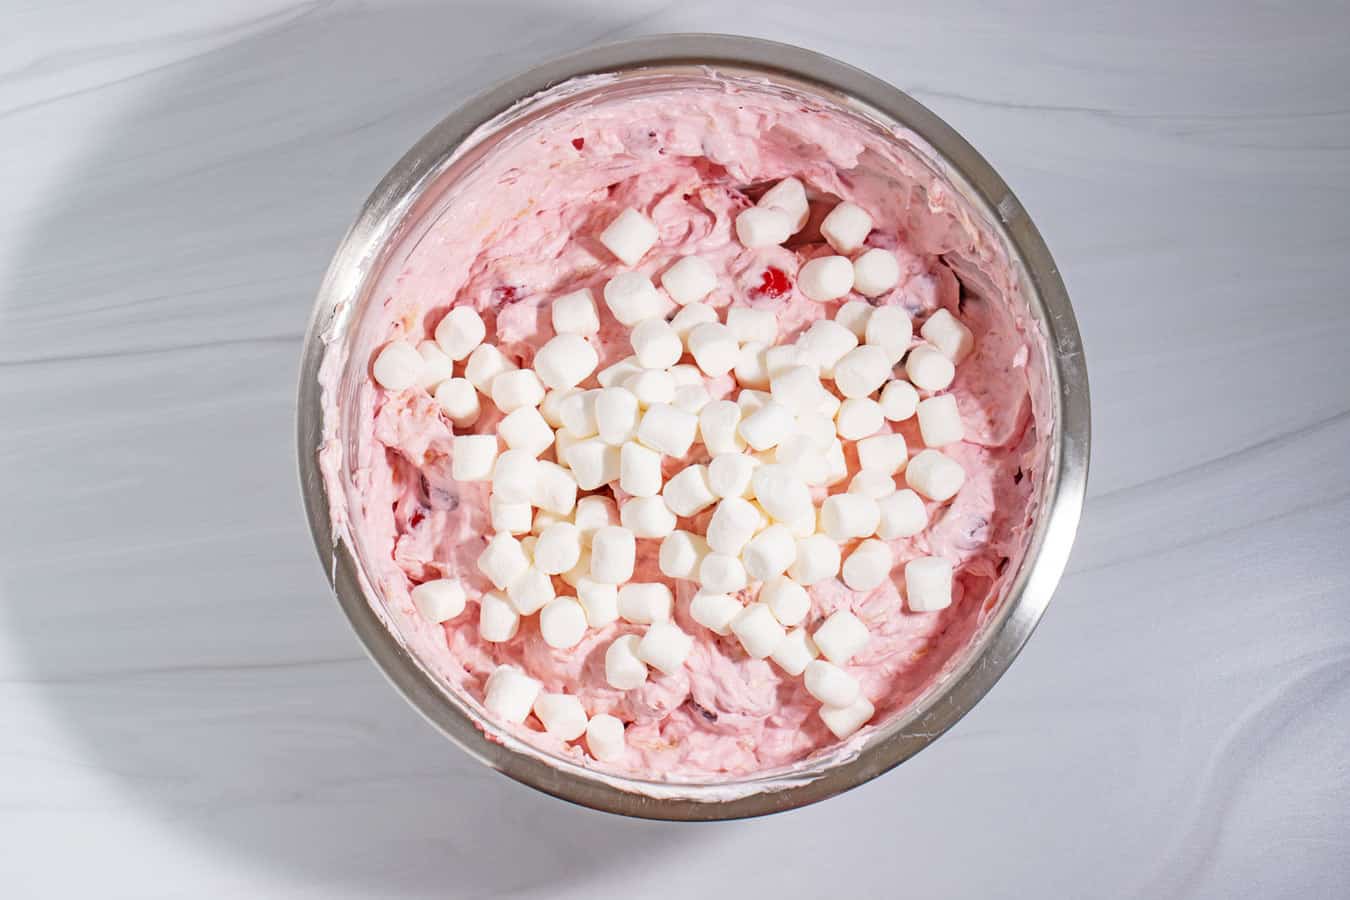 marshmallows on cherry fluff salad